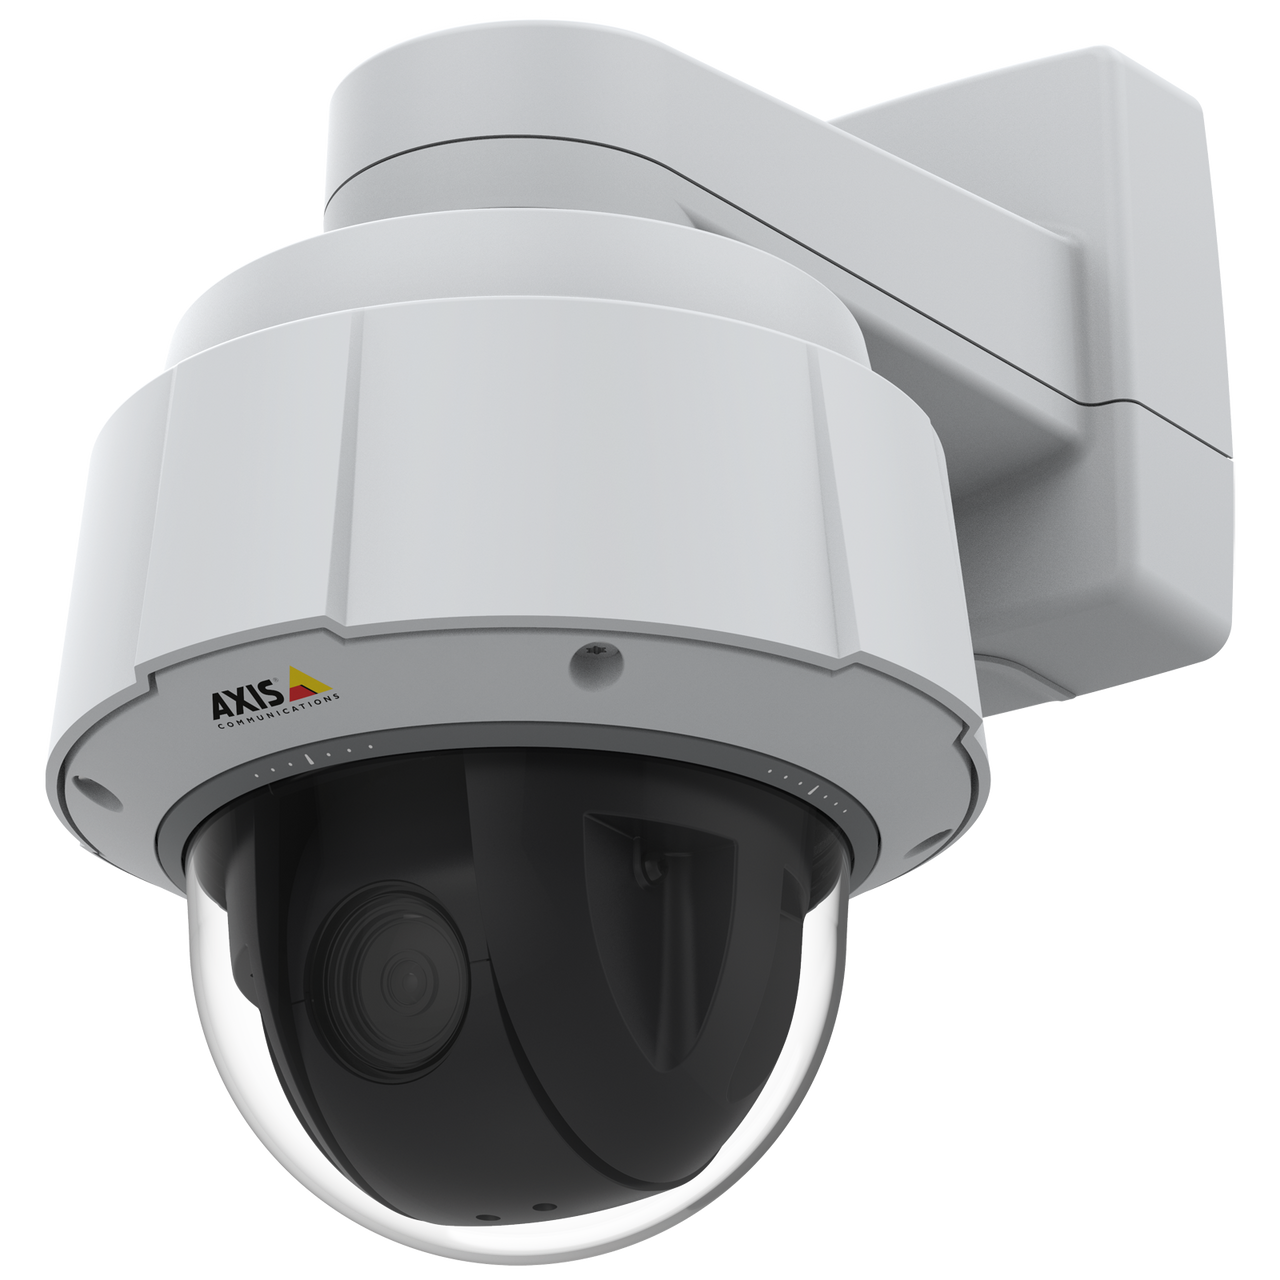 AXIS Q6075-E 60HZ PTZ Network Camera